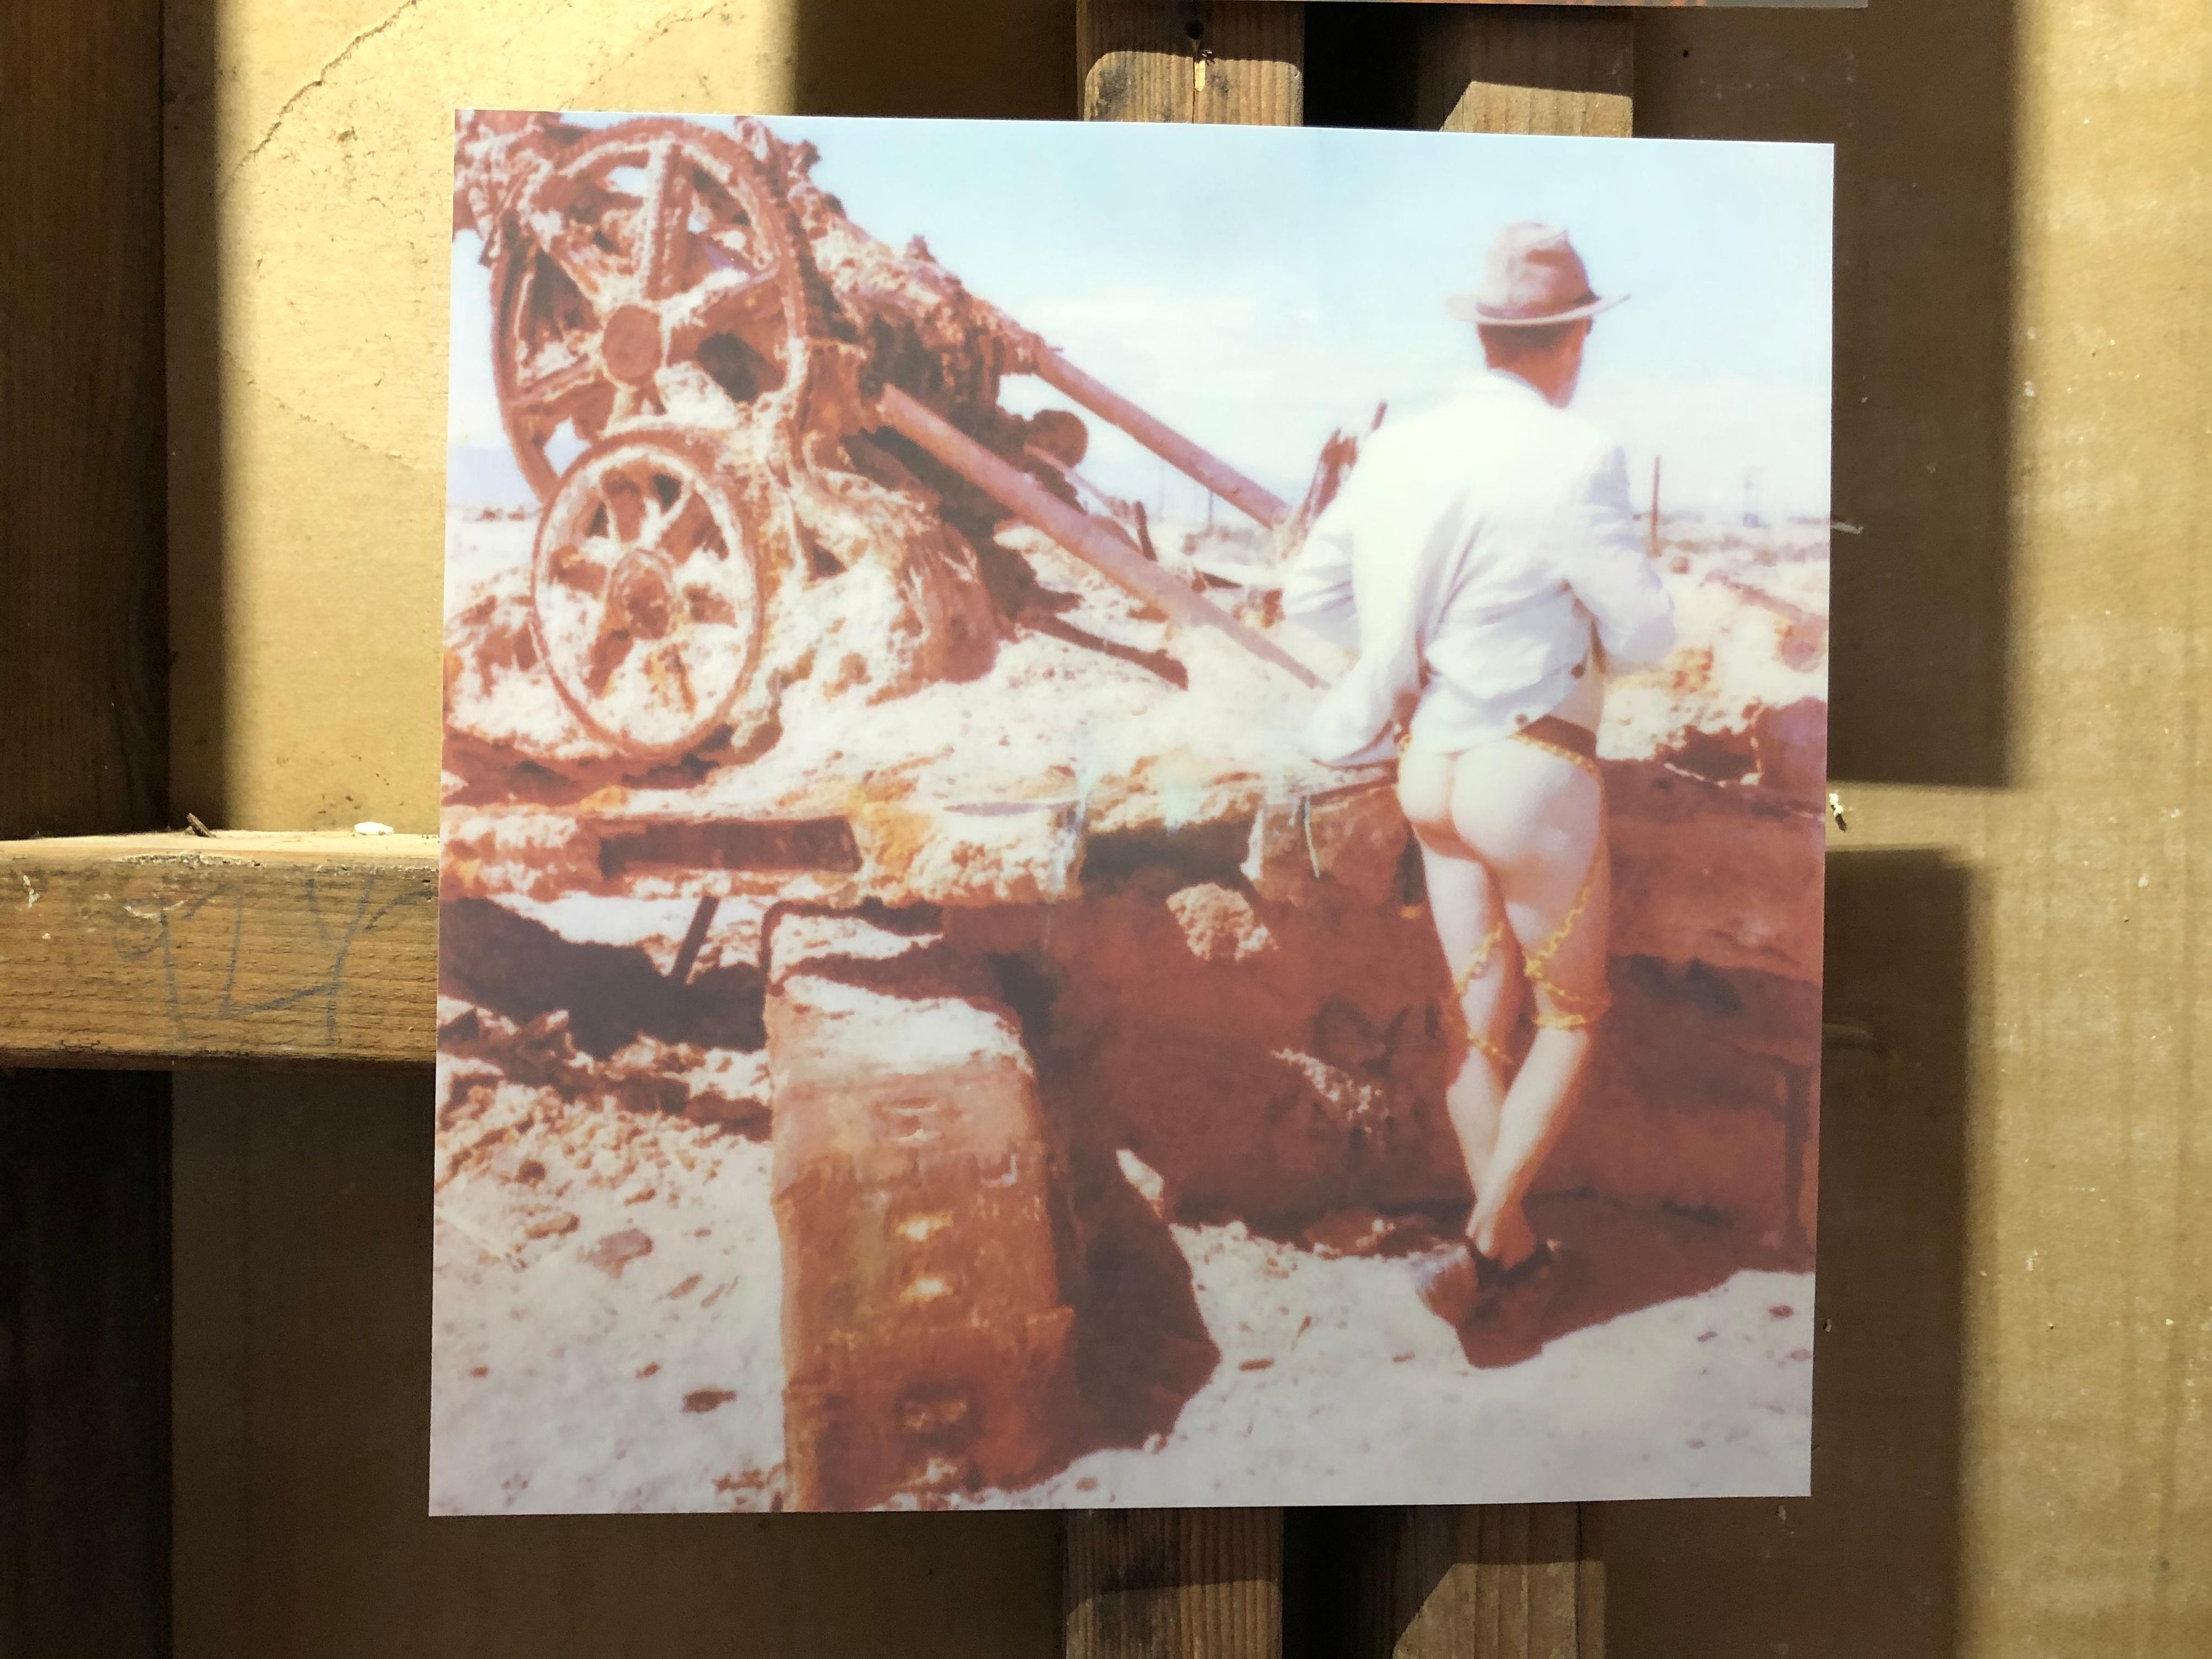 Last man standing - Zeitgenössisch, Nackt, Männer, Polaroid, 21. Jahrhundert (Grau), Nude Photograph, von Kirsten Thys van den Audenaerde